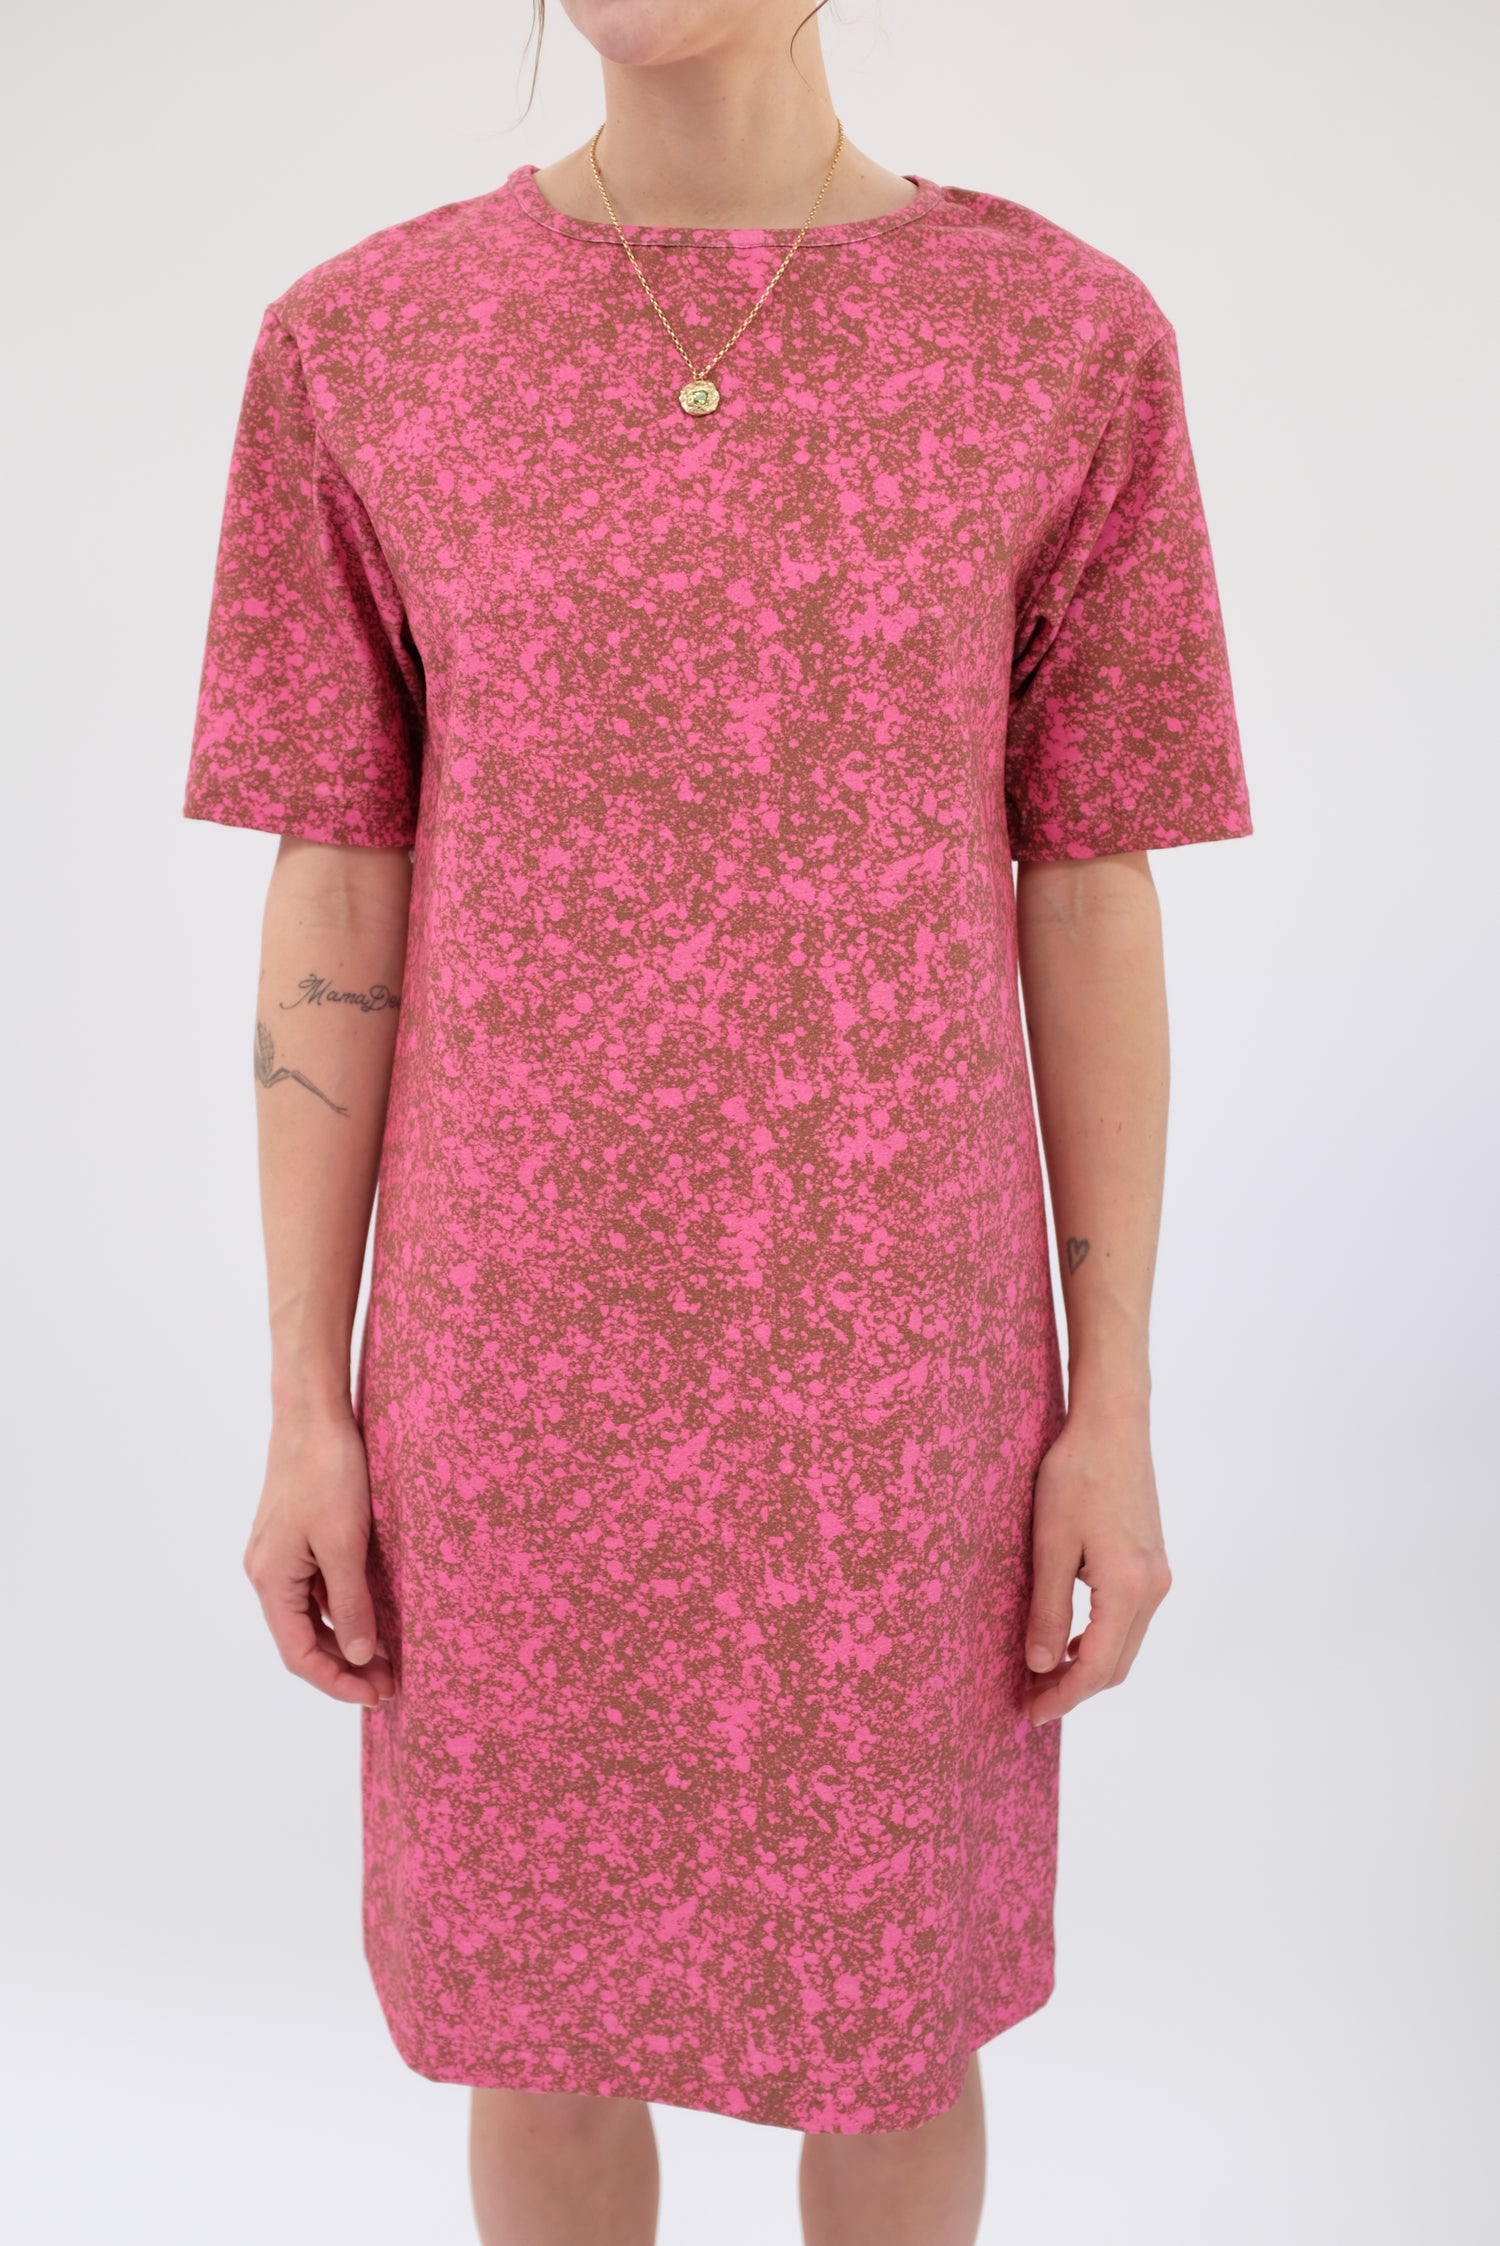 Beklina T Shirt Dress Splatter Raspberry